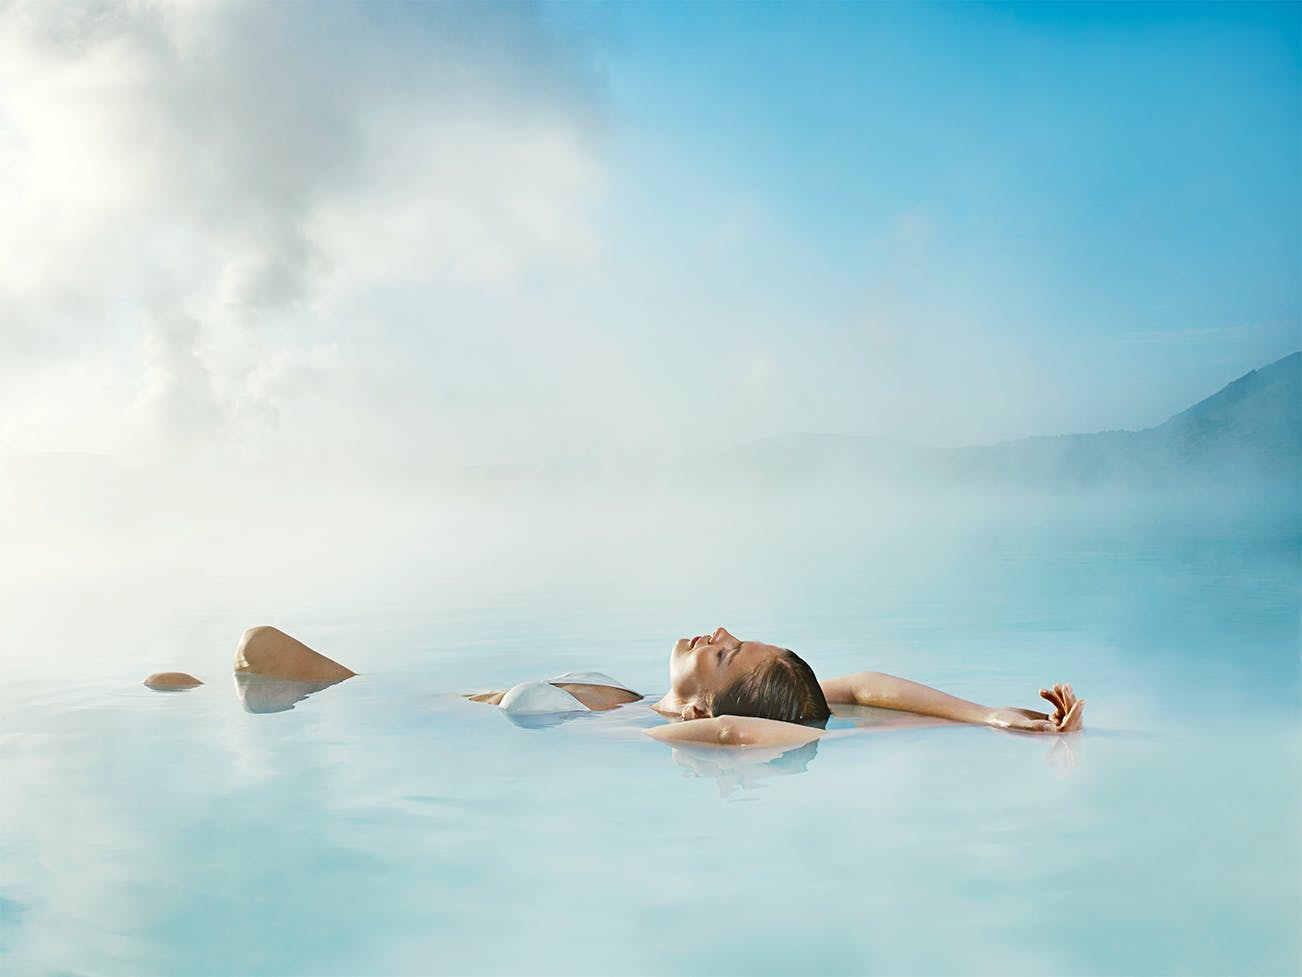 Una de las mejores maneras de empezar tu viaje a Islandia es bañándote en las mágicas aguas de la Laguna Azul, el famoso spa en la península de Reykjanes.